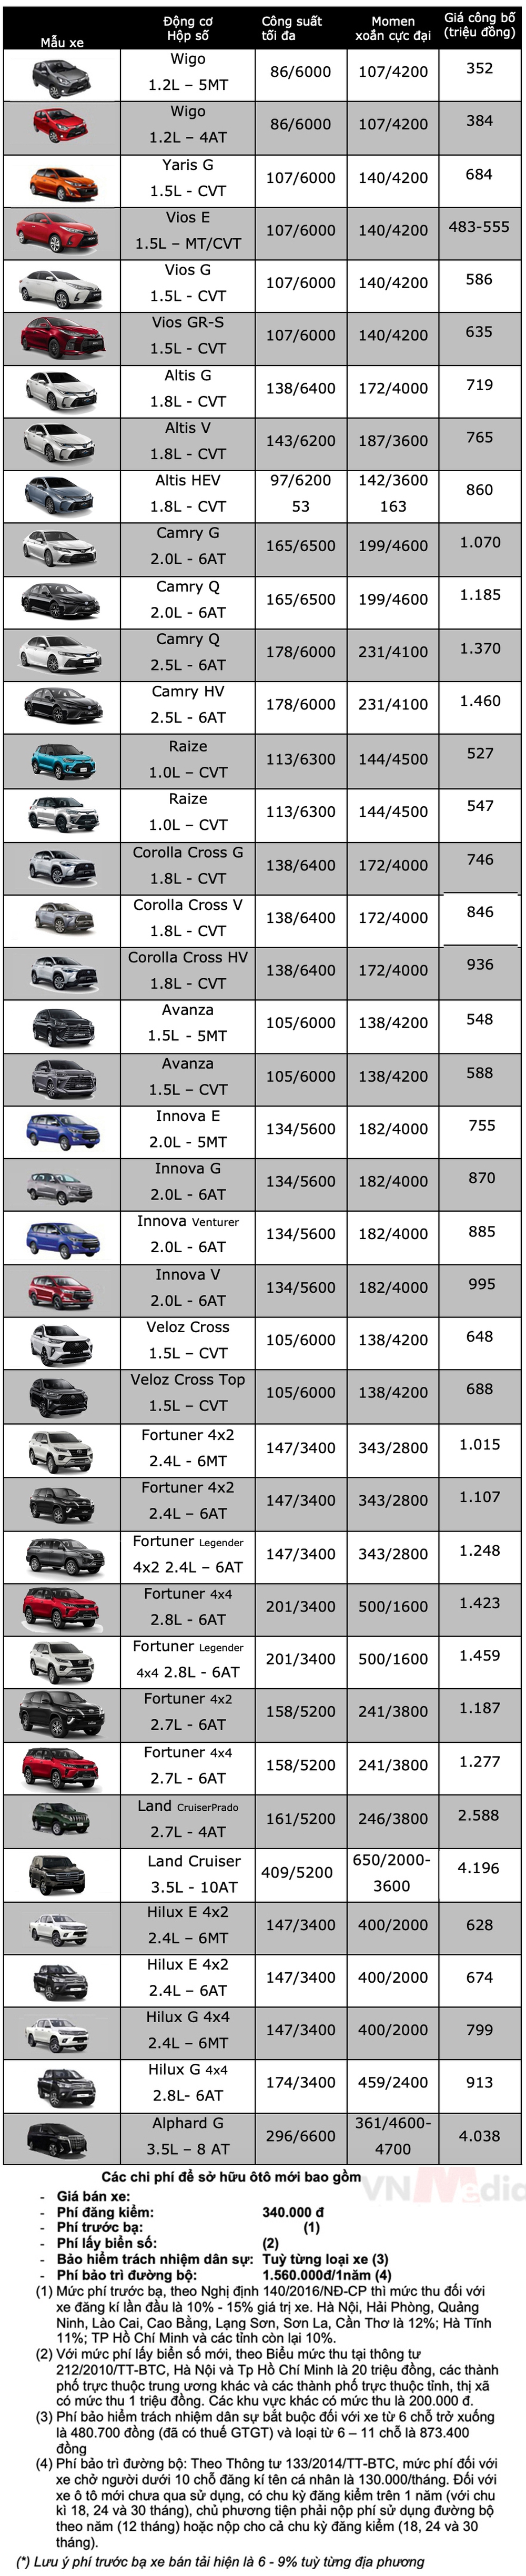 Bảng giá xe Toyota tháng 2: Toyota Vios được ưu đãi 37 triệu đồng - Ảnh 2.